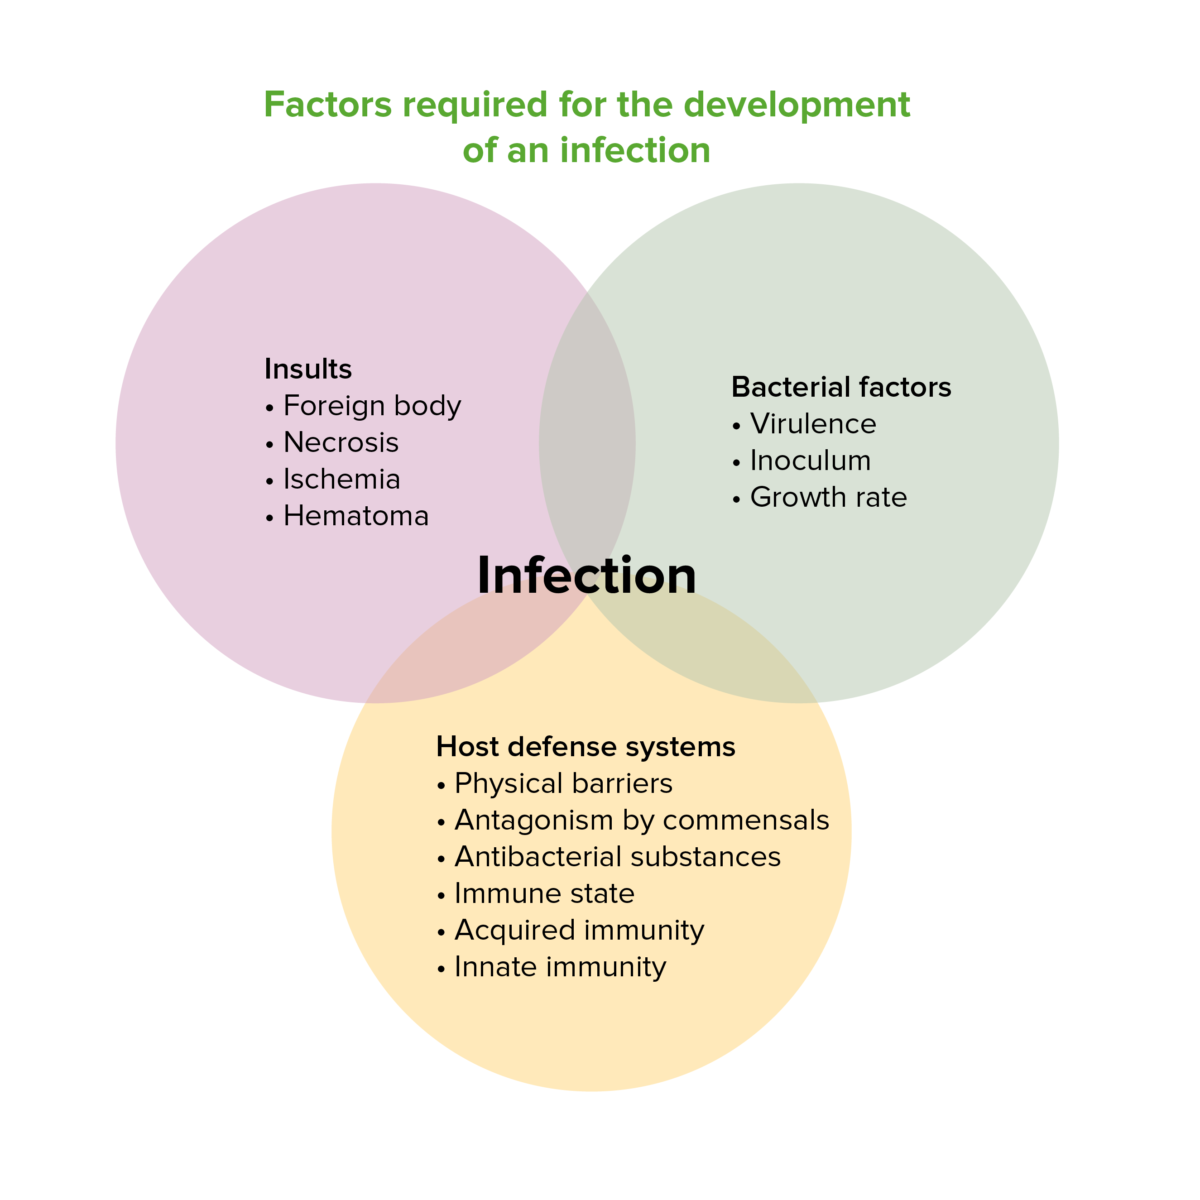 Fatores necessários para o desenvolvimento de uma infeção